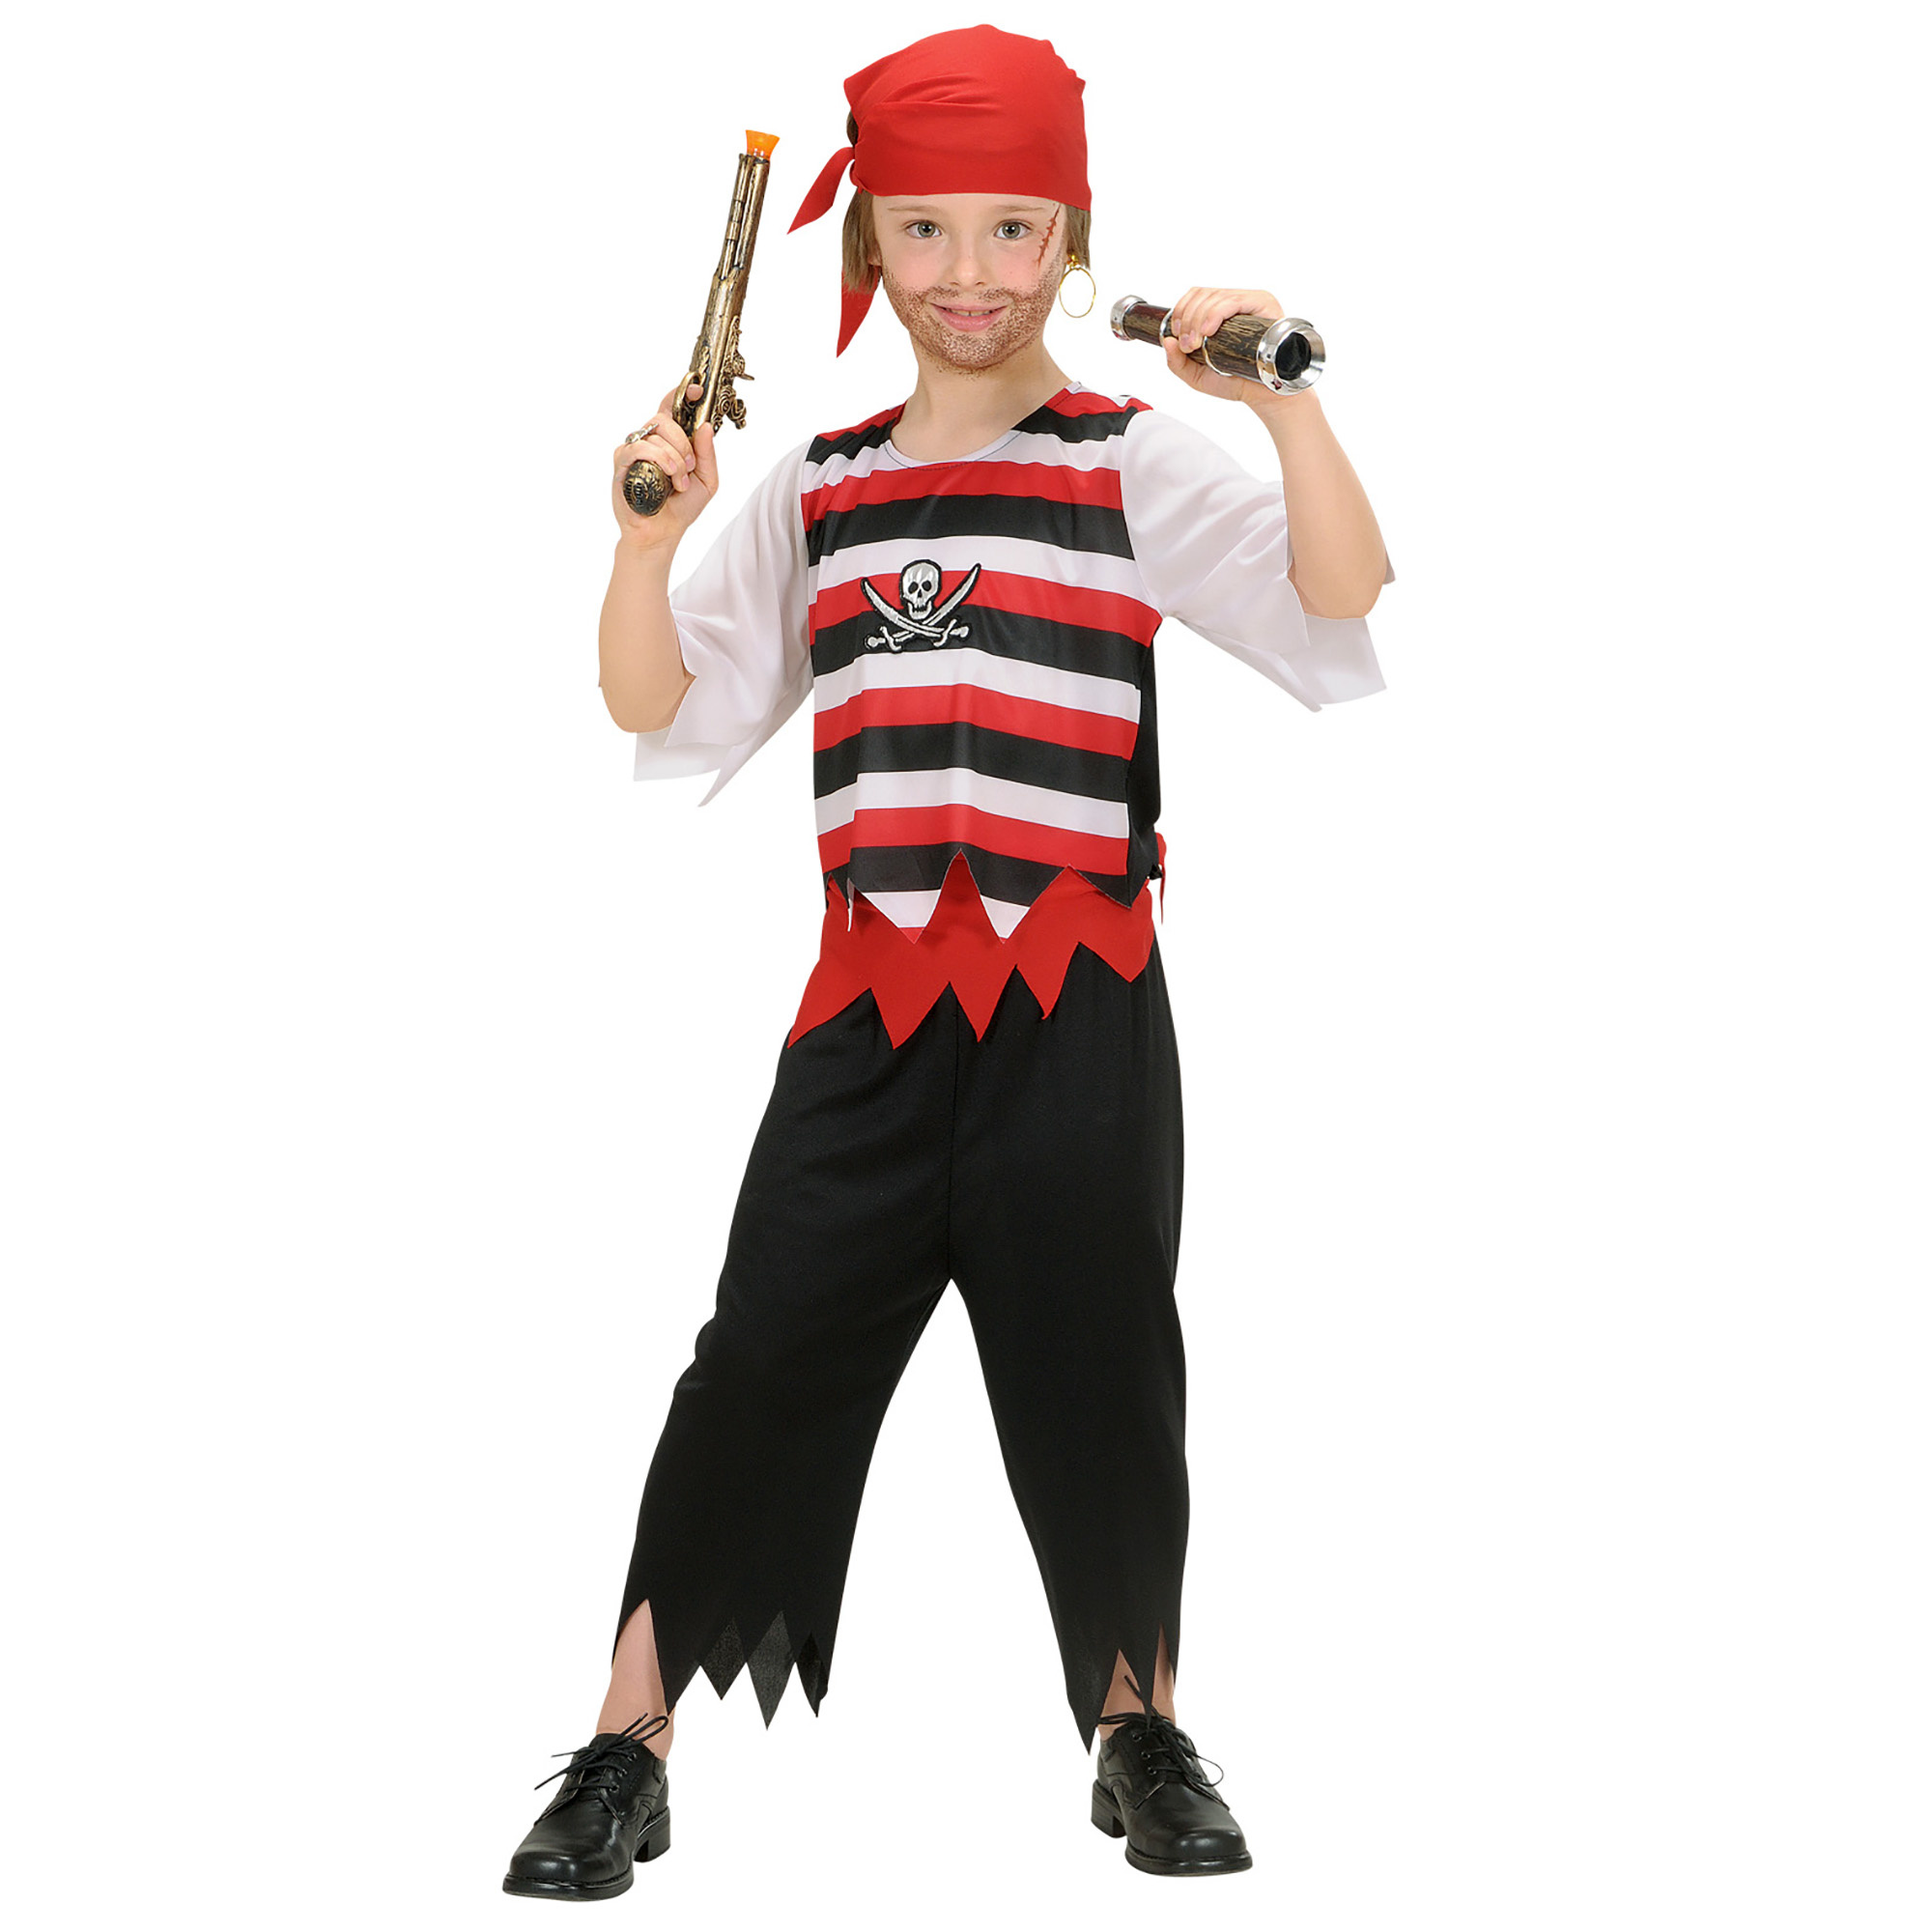 Пират 5 в 1. Костюм пирата. Костюм пирата на мальчика. Карнавальный костюм пирата для мальчика. Пиратский наряд для мальчика.